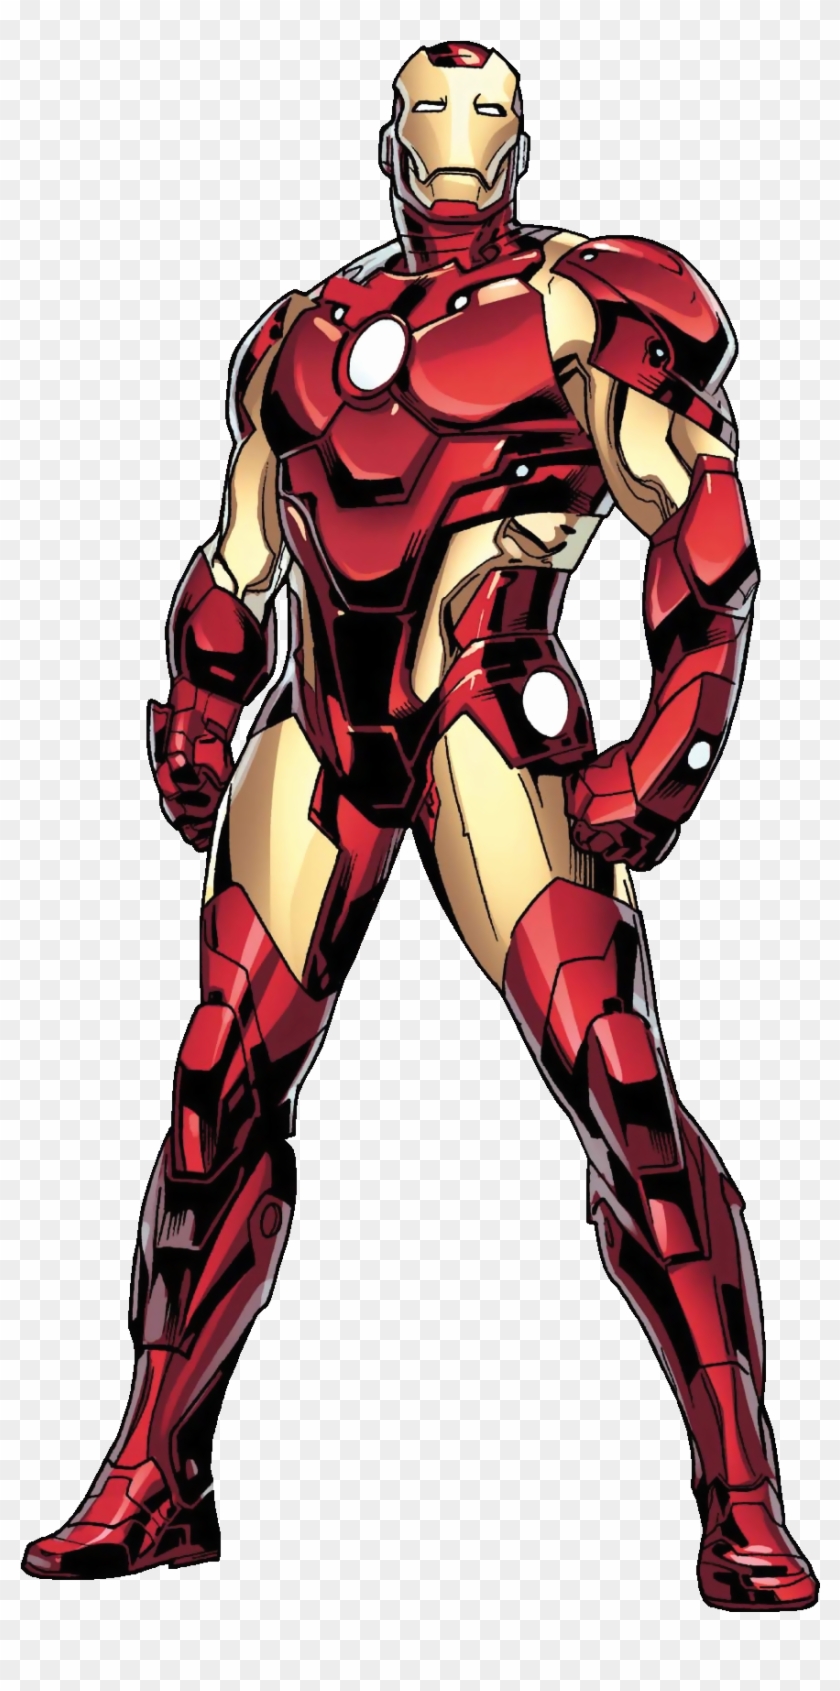 Iron Man Marvel Comics - Iron Man Marvel Comics #767861